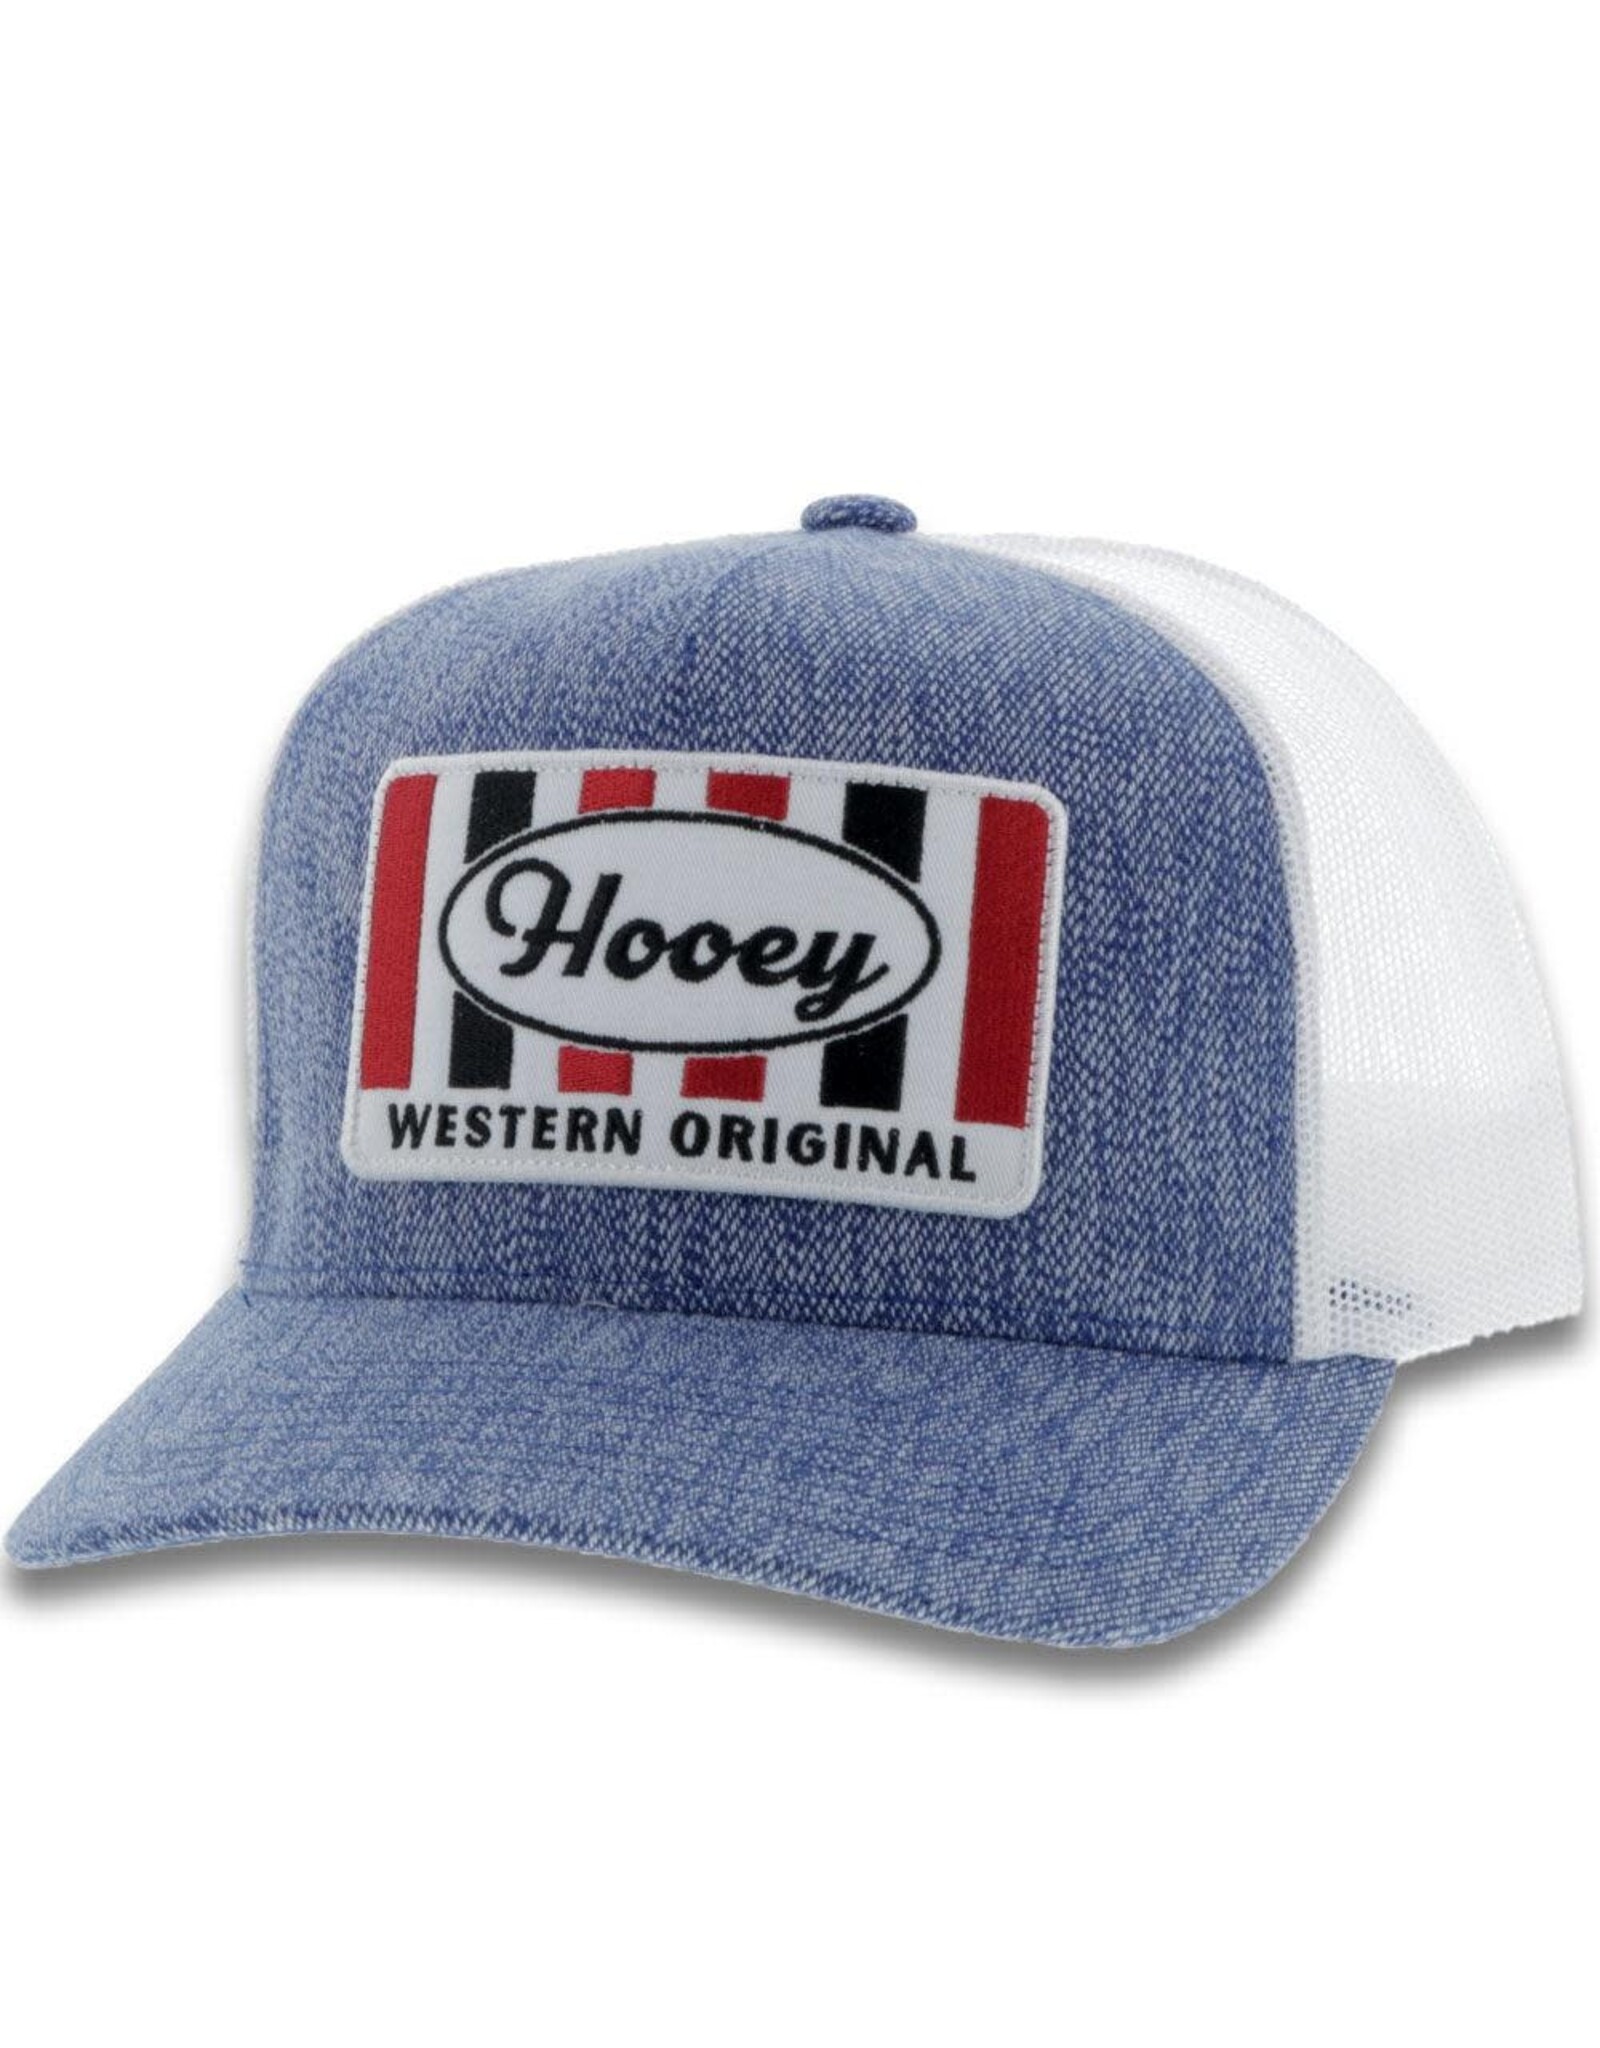 Hooey Brands Hat "Hooey" Denim/White